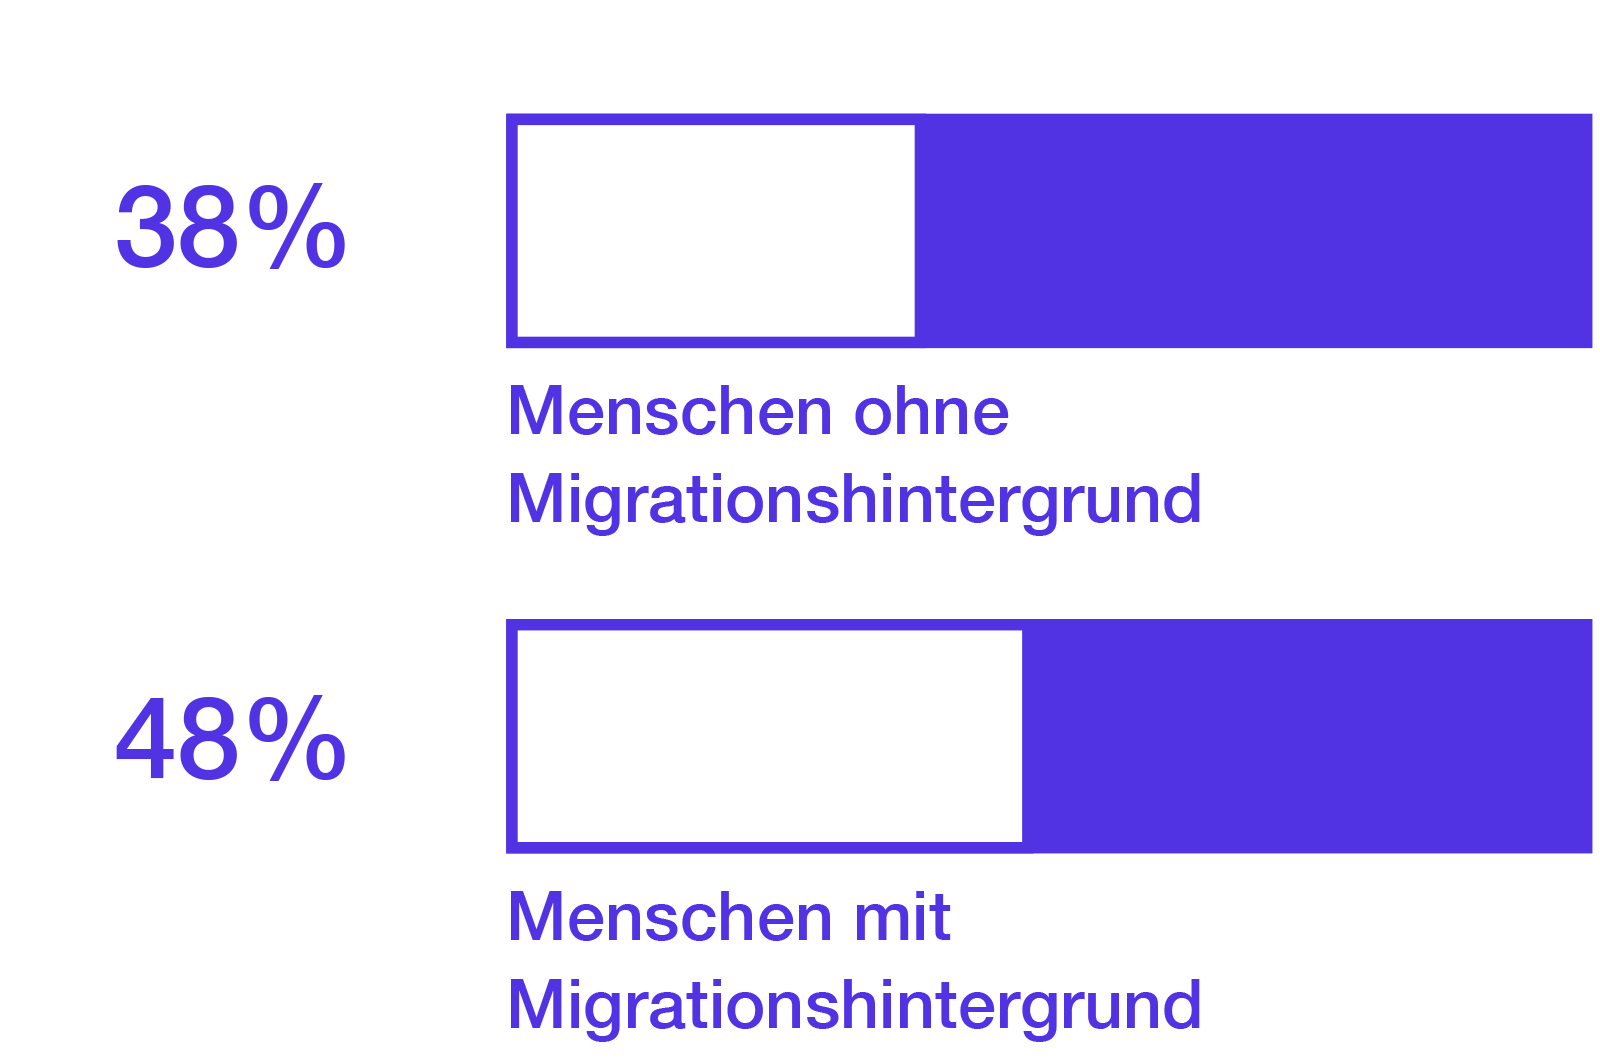 Ohne Migrationshintergrund: 38%. Mit Migrationshintergrund: 48%.